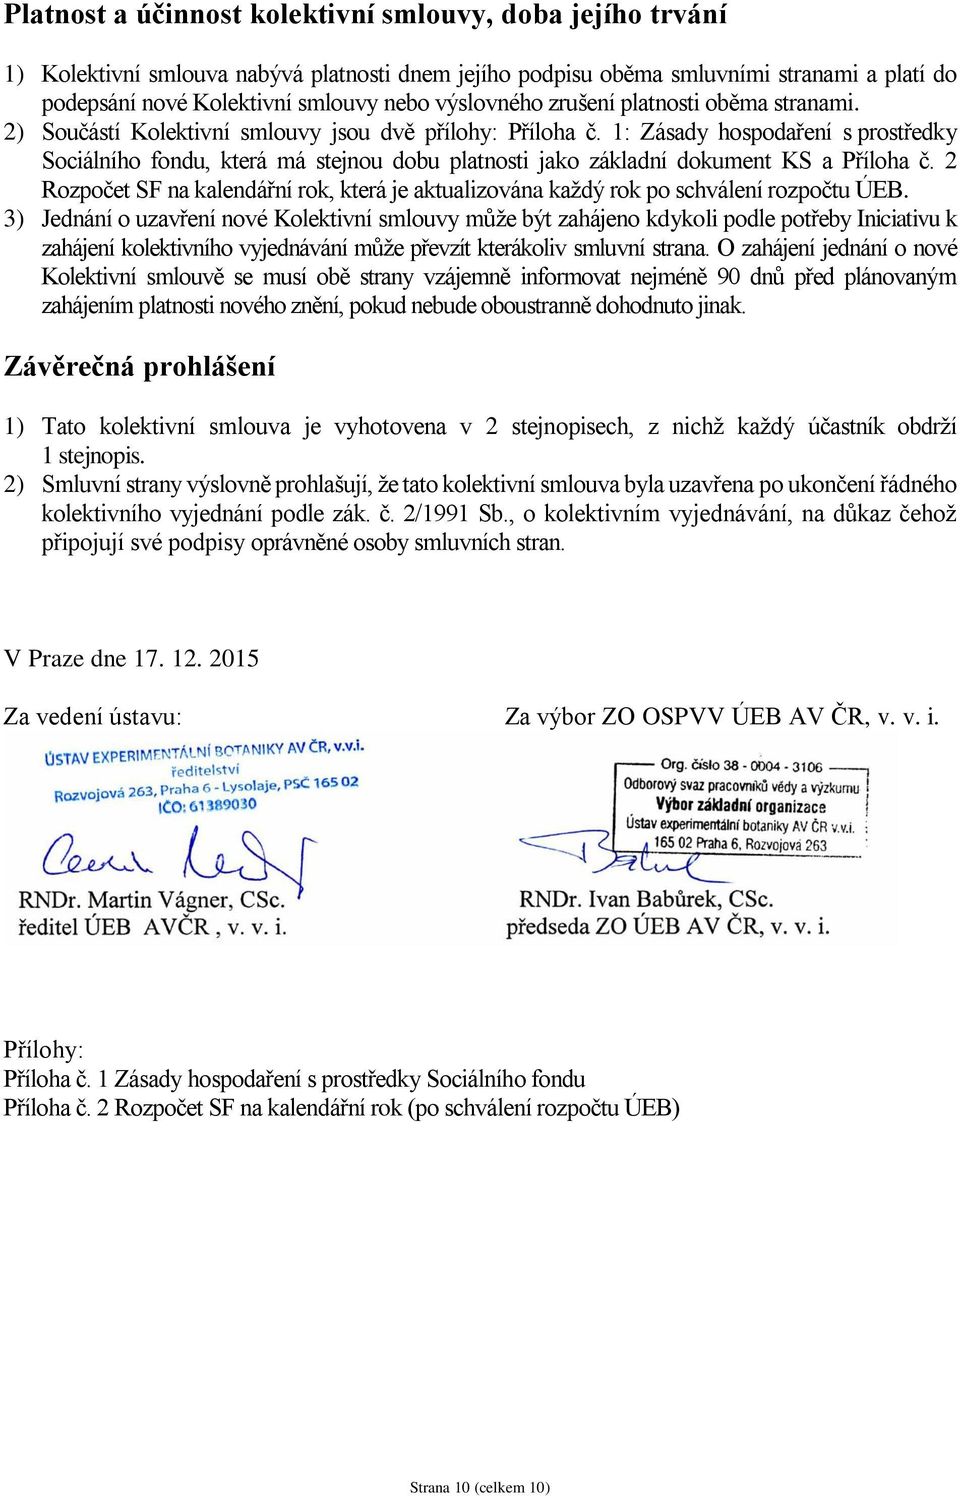 1: Zásady hospodaření s prostředky Sociálního fondu, která má stejnou dobu platnosti jako základní dokument KS a Příloha č.